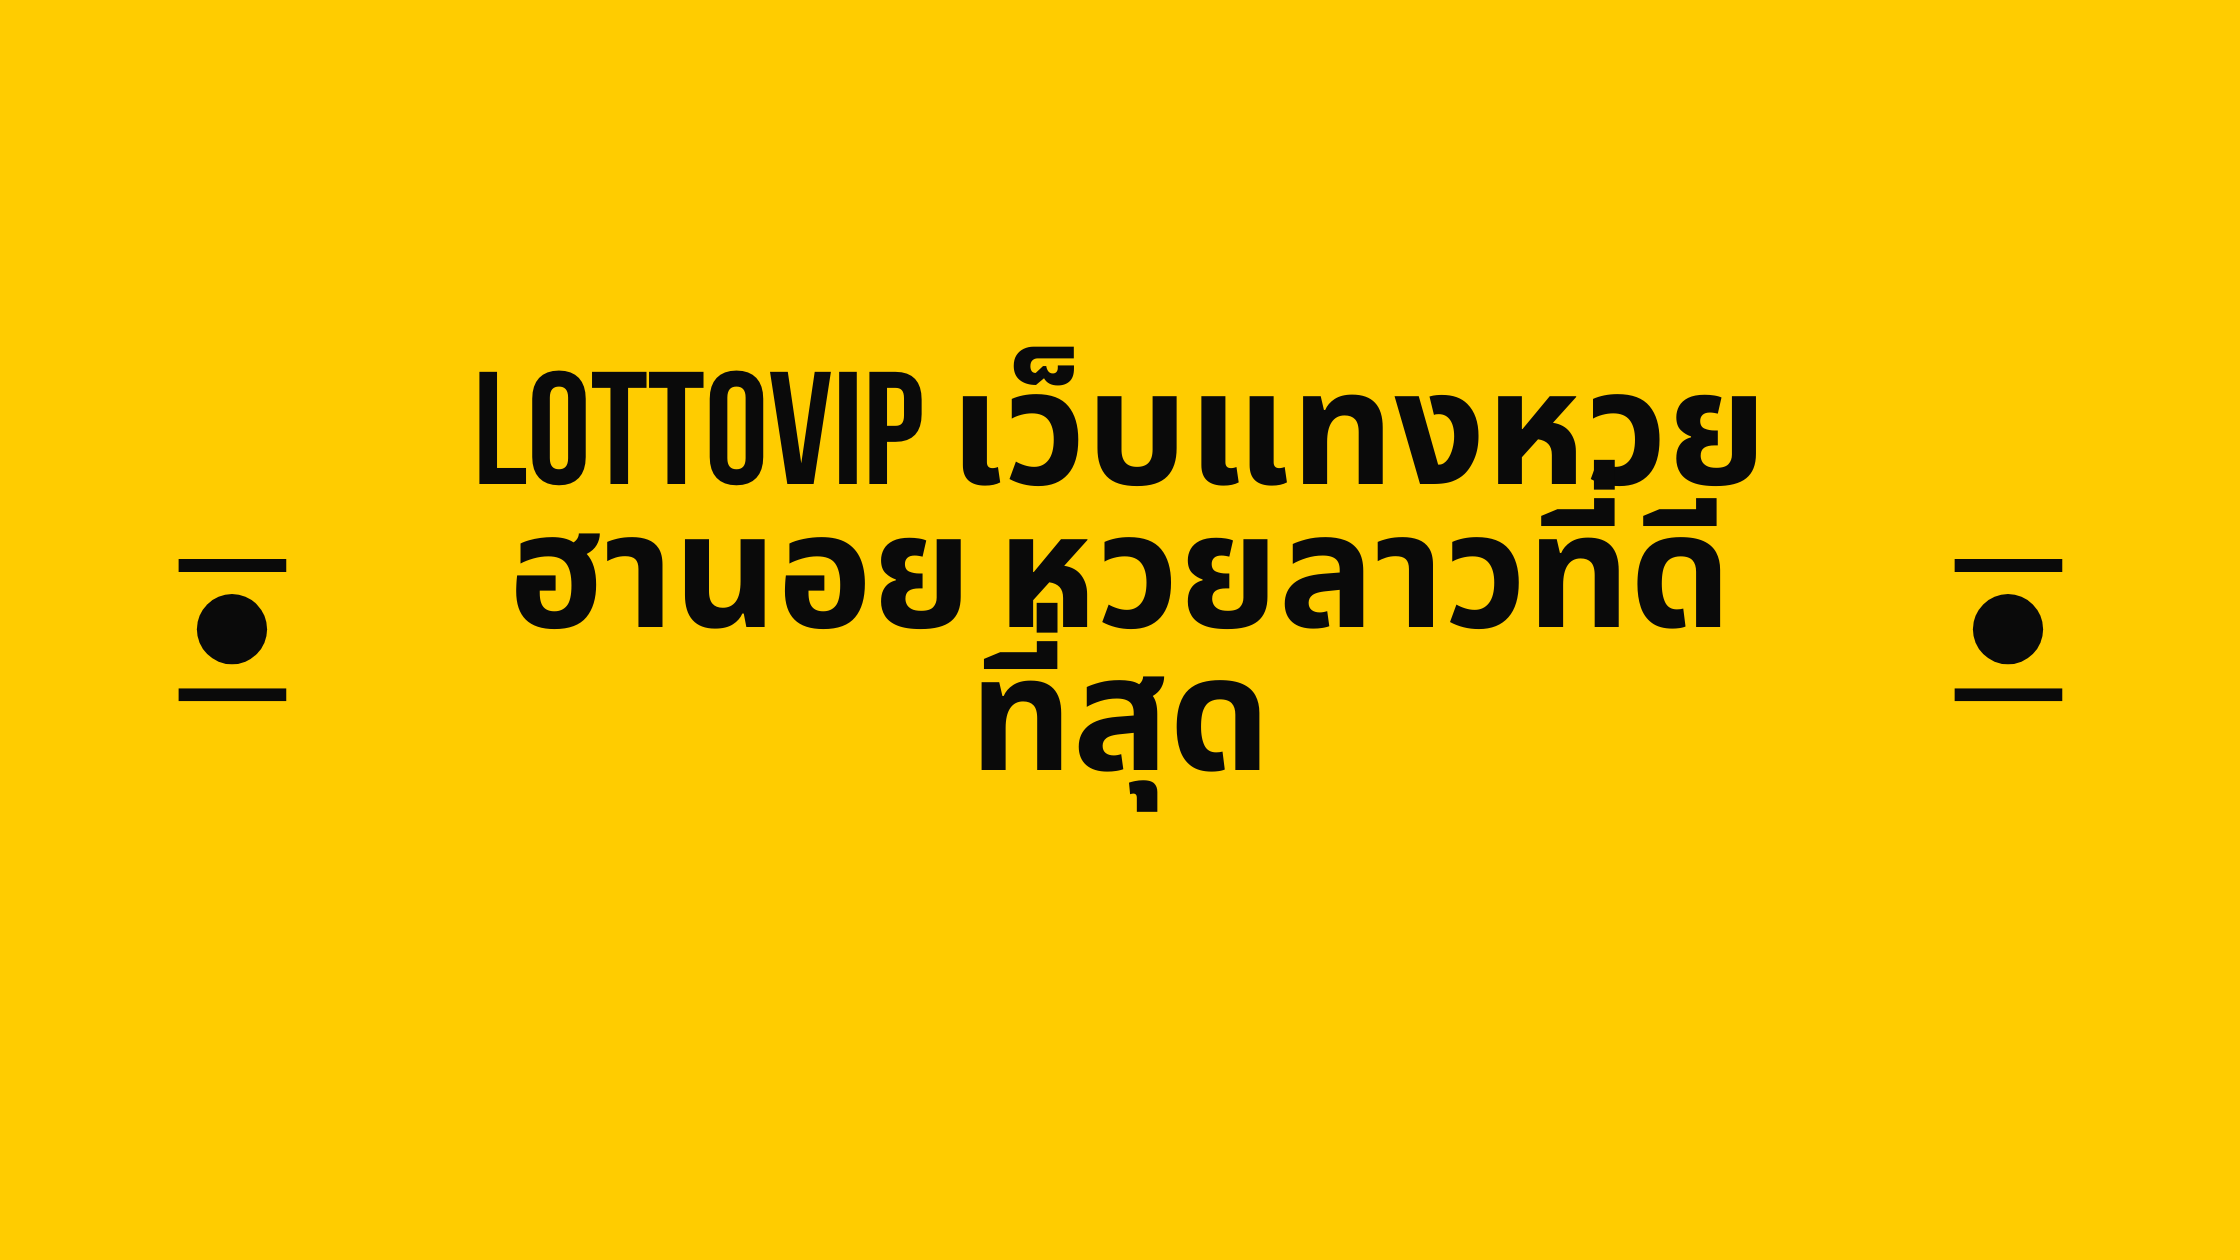 LottoVIP เว็บแทงหวยฮานอย หวยลาวที่ดีที่สุด